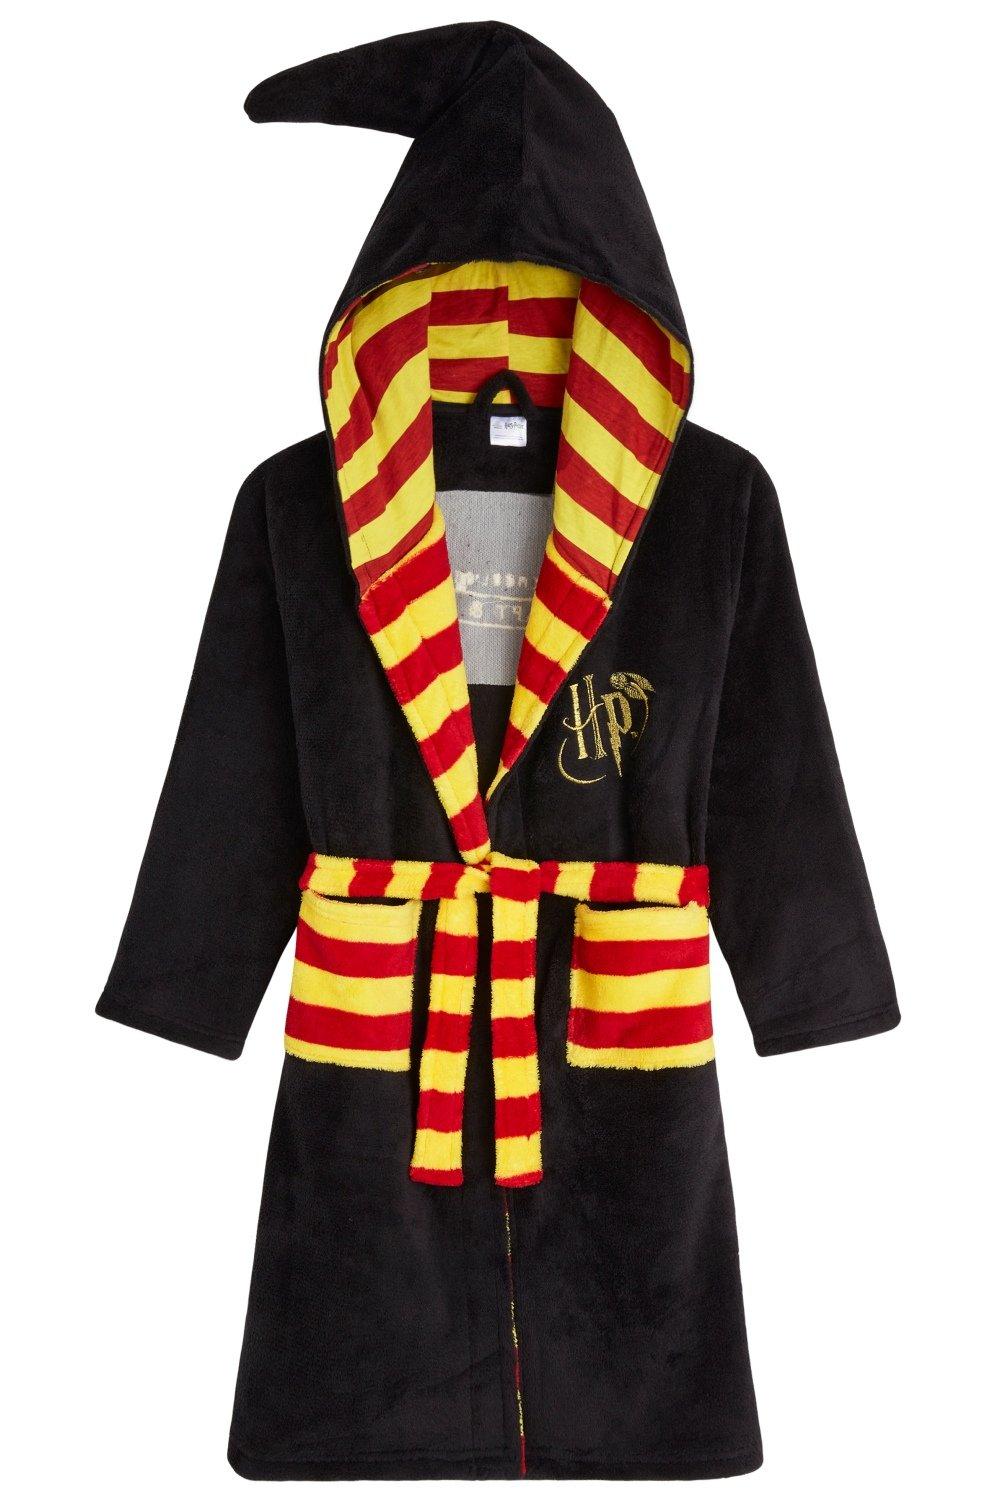 Пышный халат с капюшоном Harry Potter, черный закладка гарри поттер герб гриффиндора